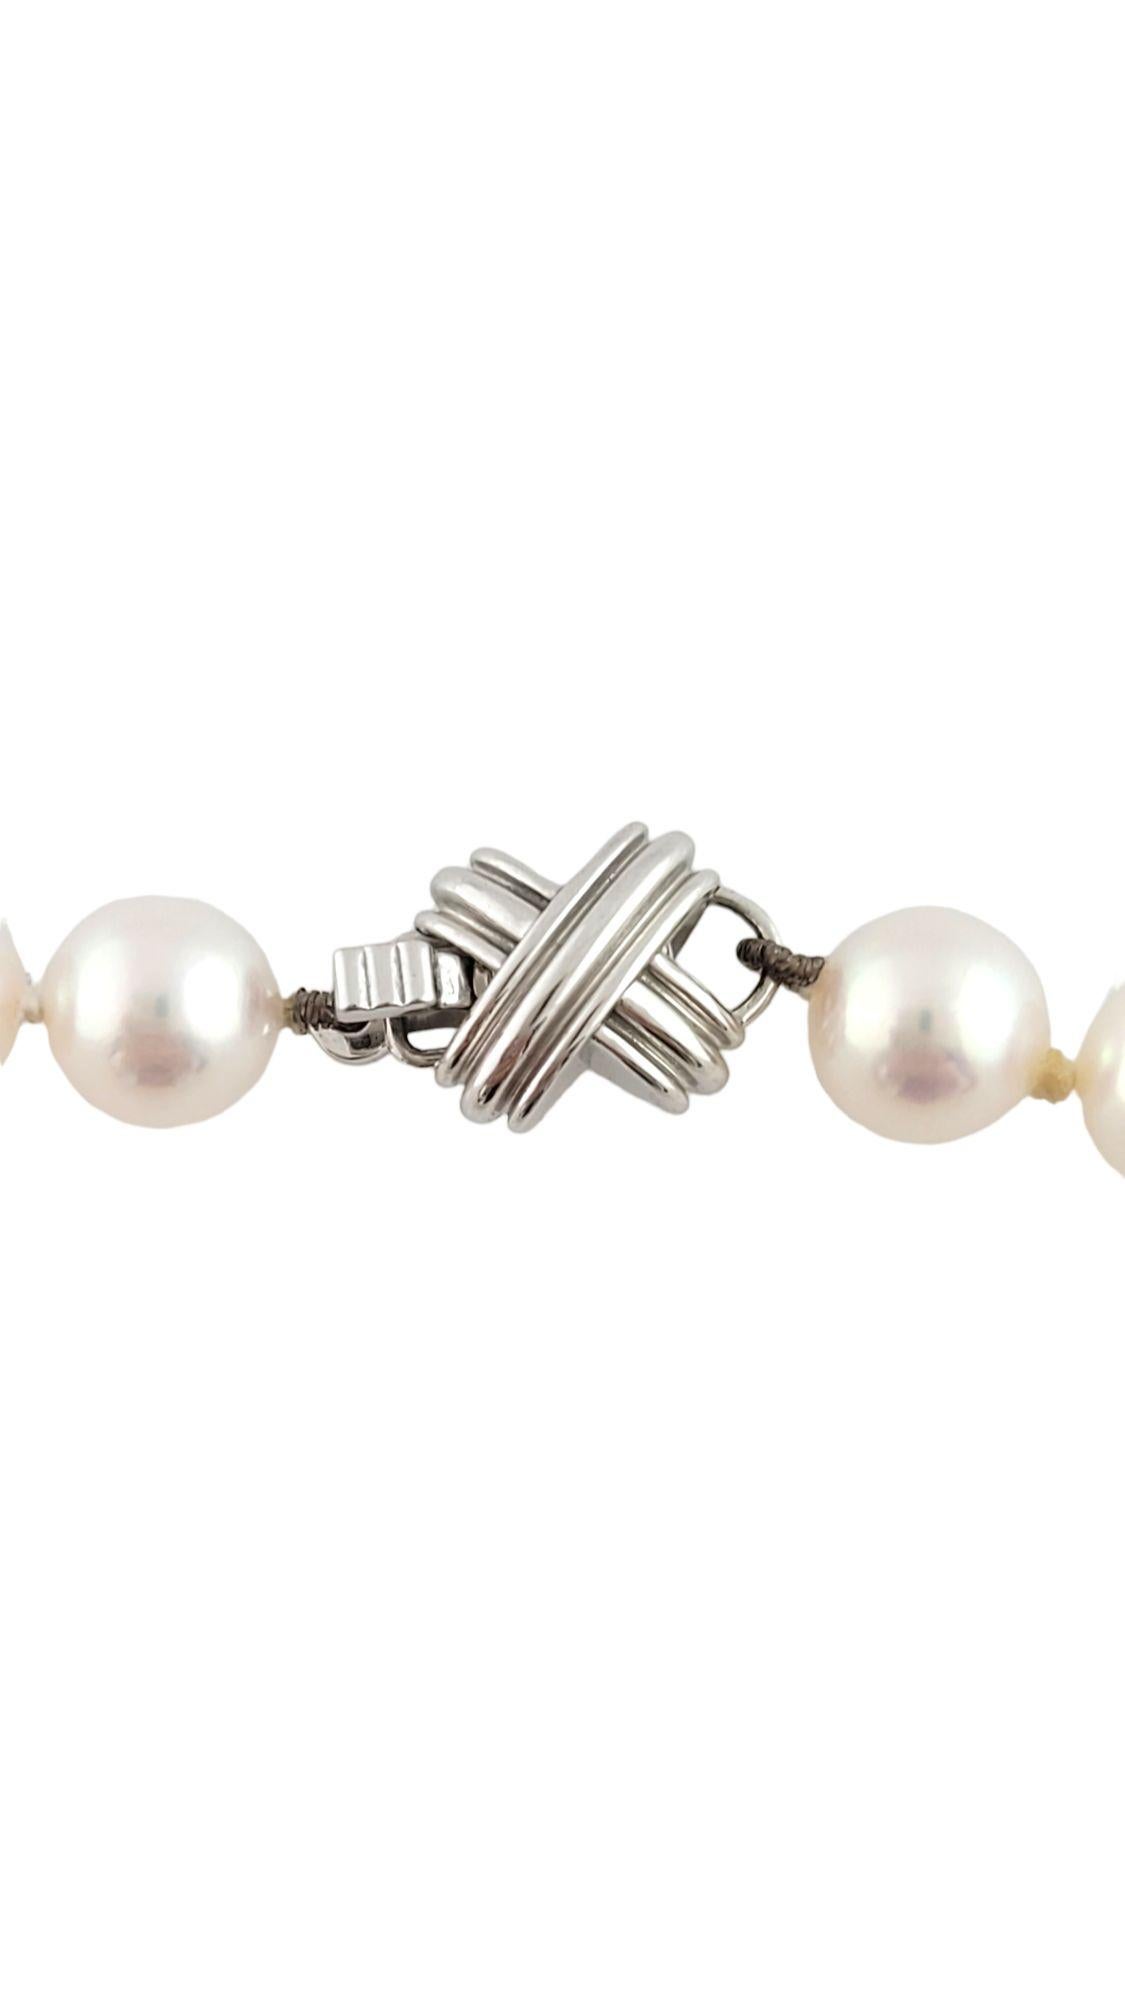 Vintage Tiffany & Co. Collier de perles en or blanc 18K

Magnifique collier Tiffany en or blanc 18K avec 58 belles perles !

Perles d'environ 7,2 mm chacune. Blanc avec une nuance de rose

Longueur : 18.5